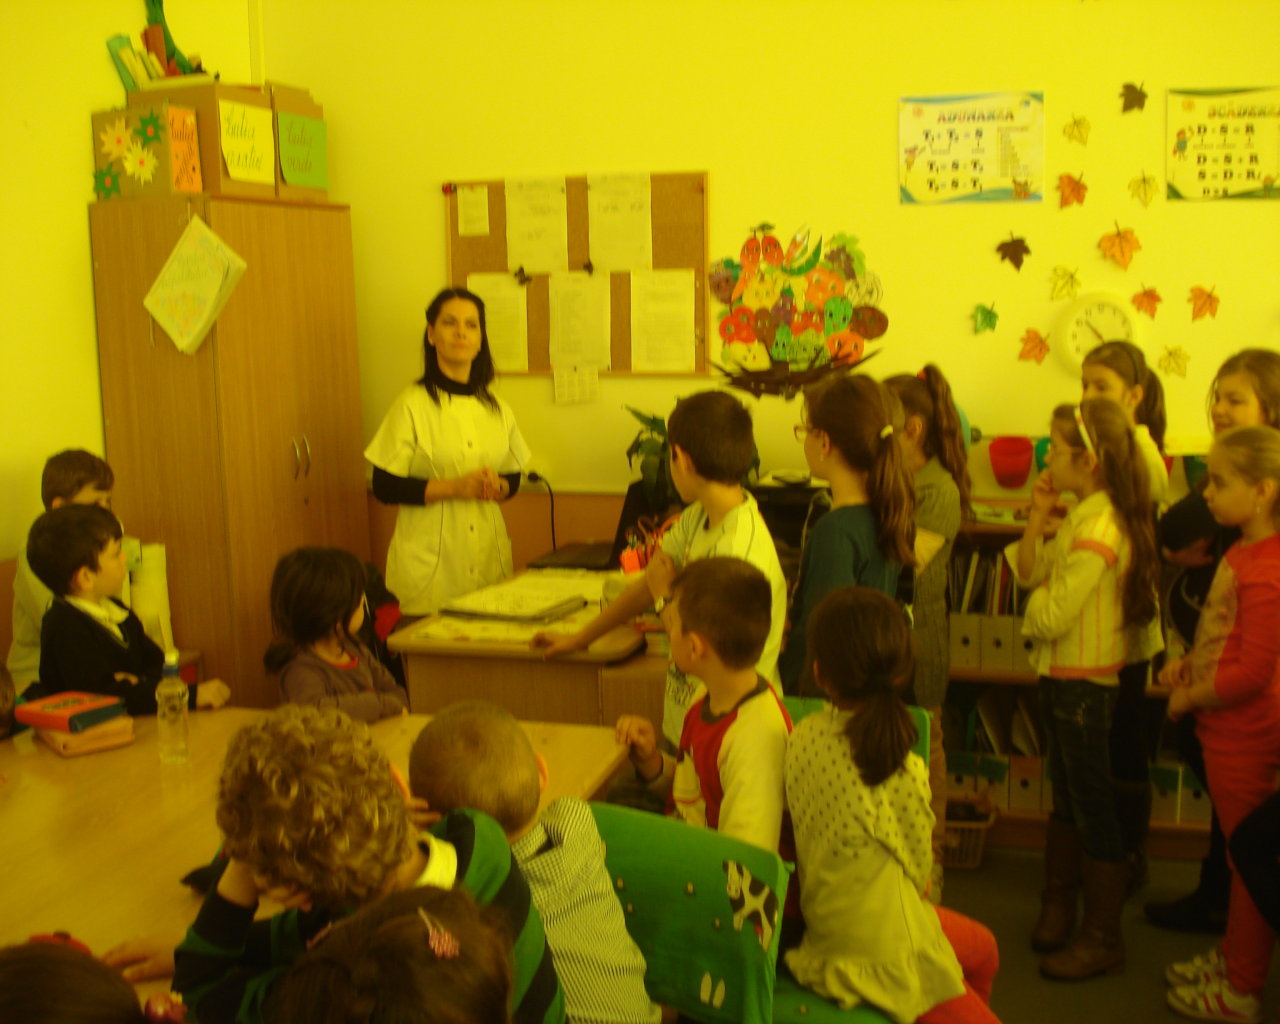 Şcoala Gimnaziala Petreşti